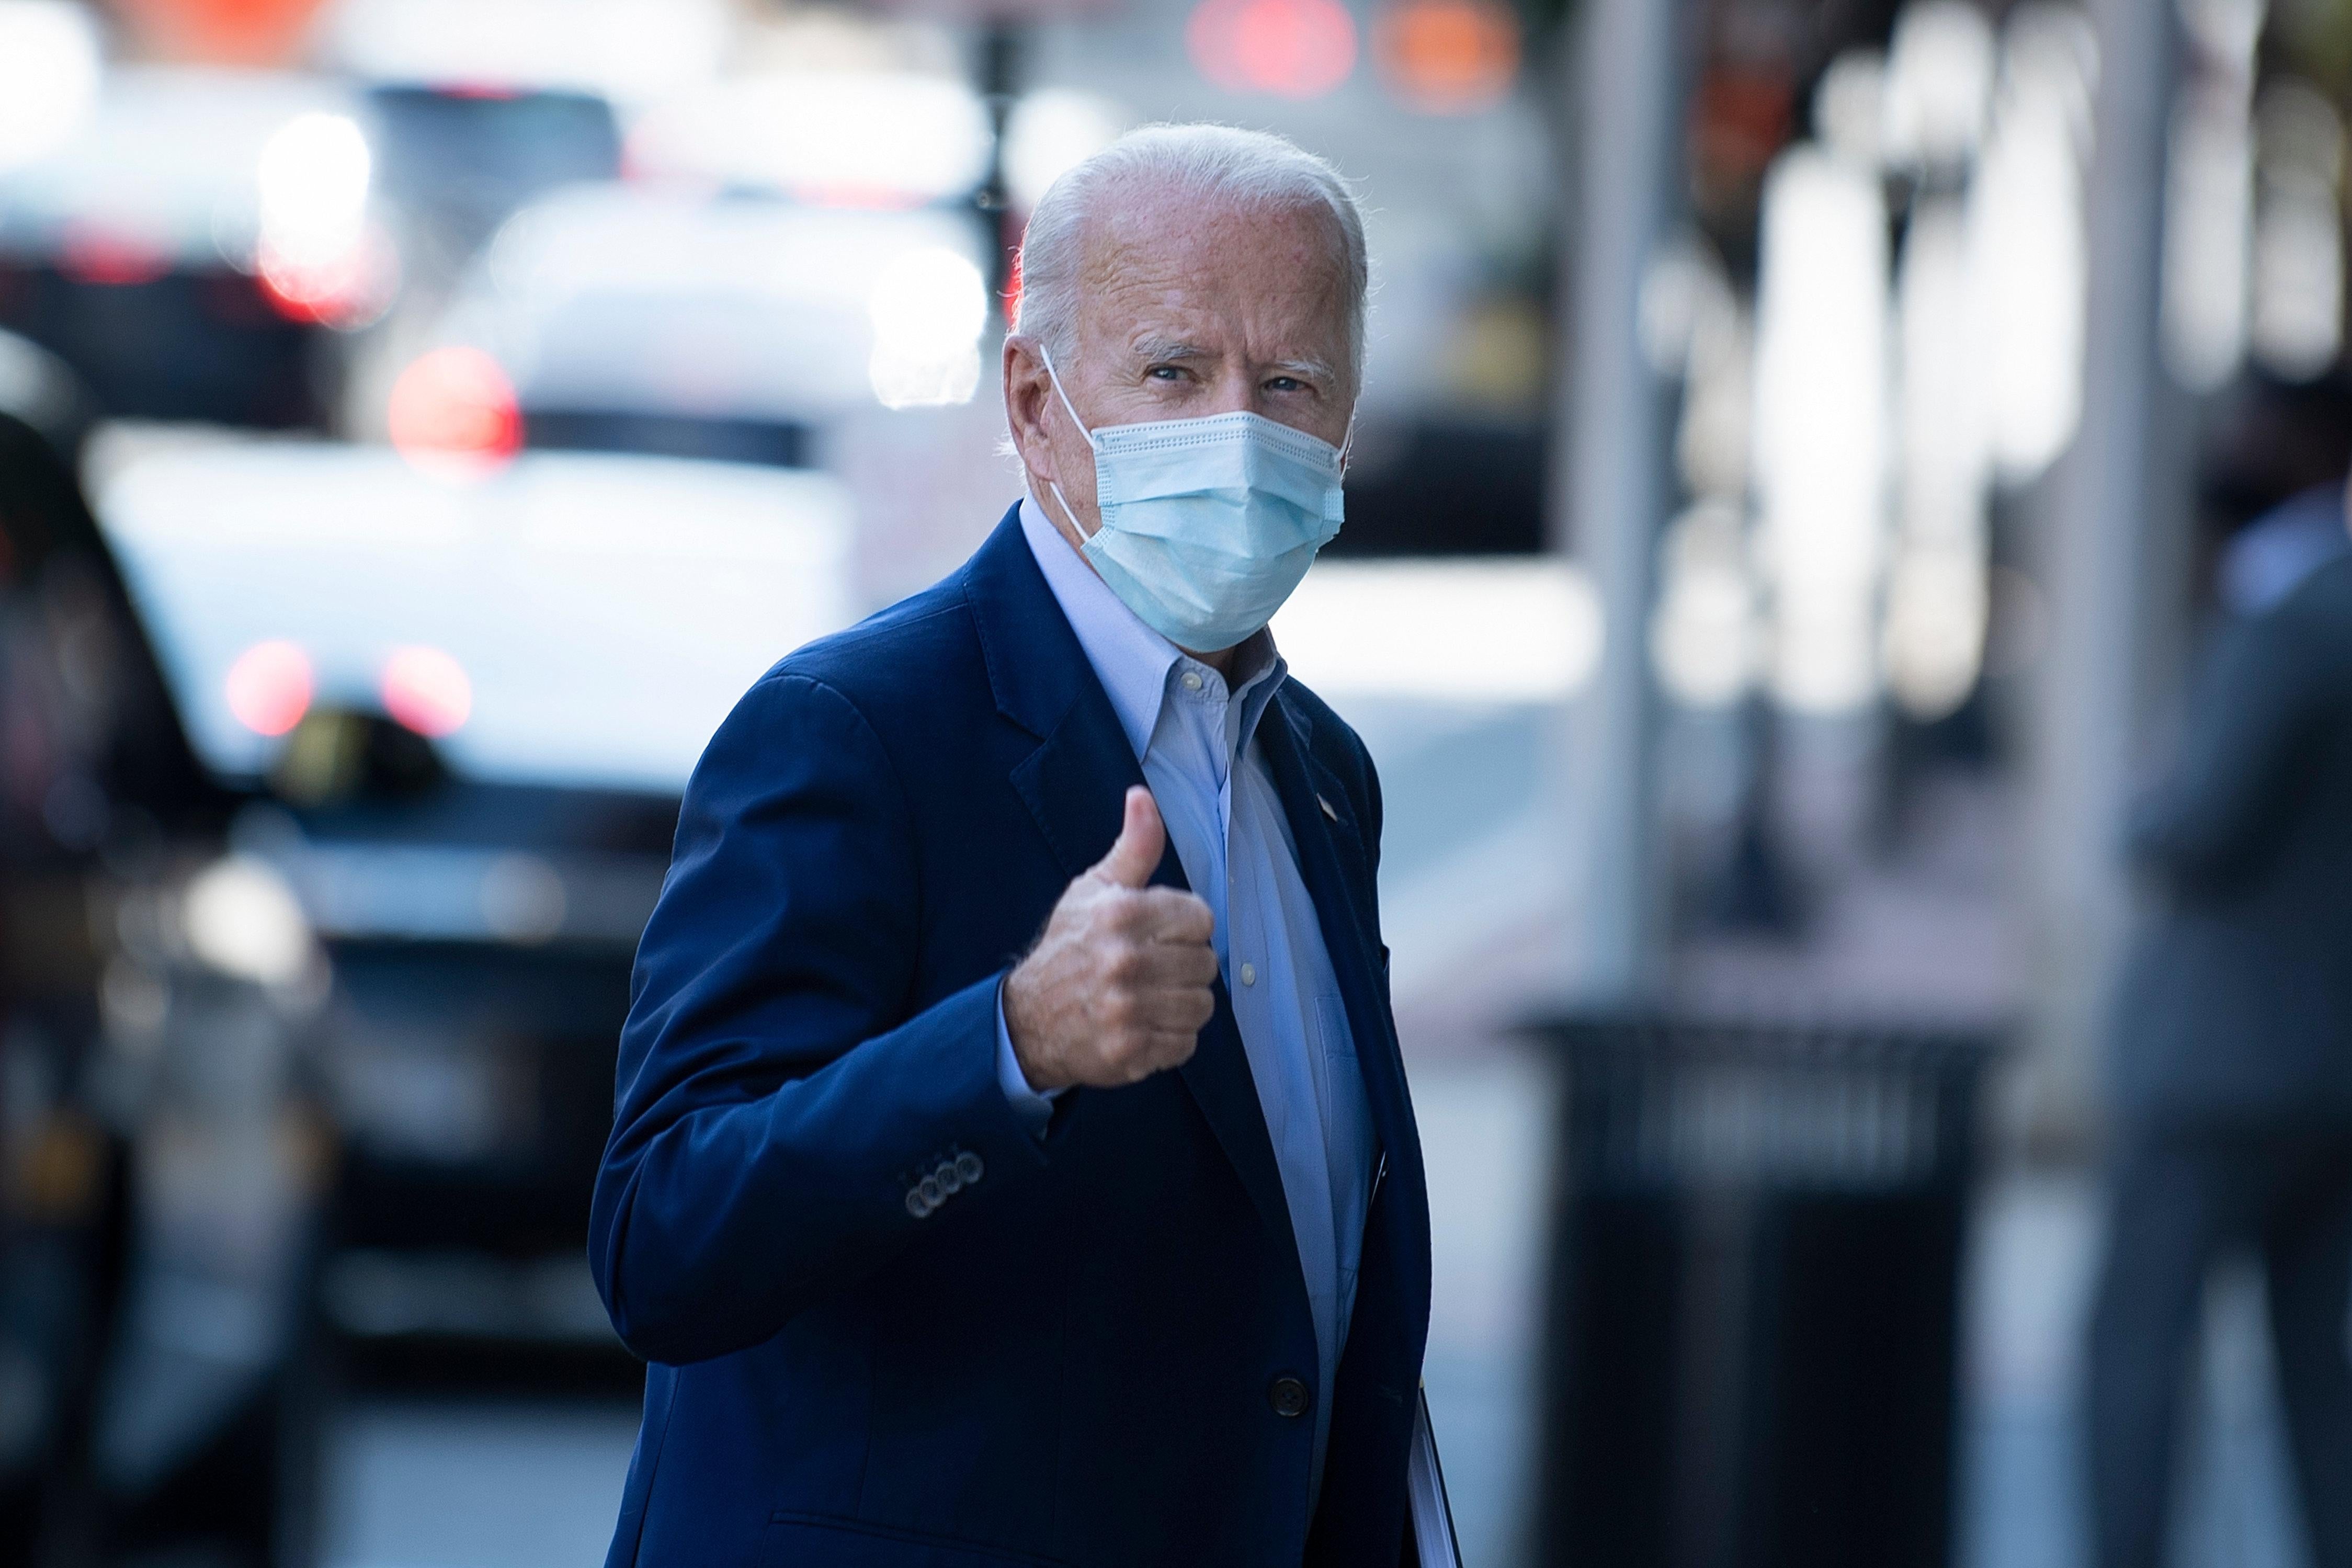 Joe Biden, wearing a mask, gives a thumbs-up as he walks